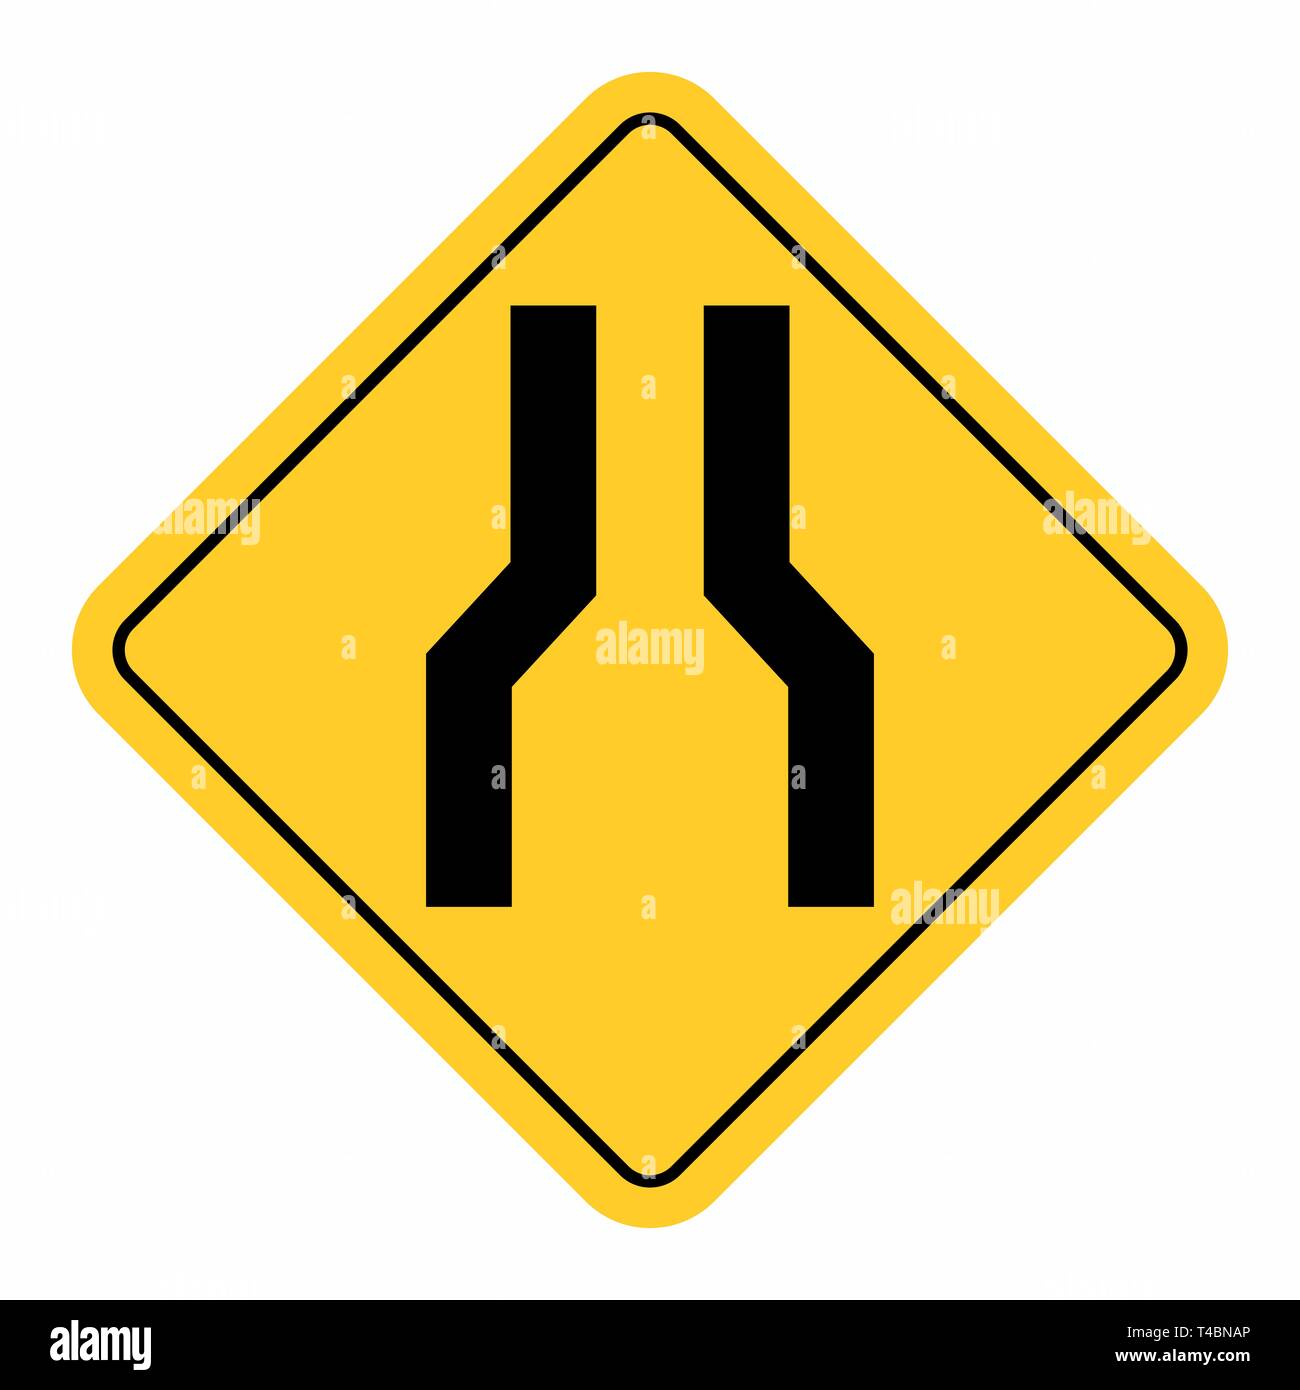 Ilustración de la angosta carretera firmar sobre fondo blanco. Ilustración del Vector